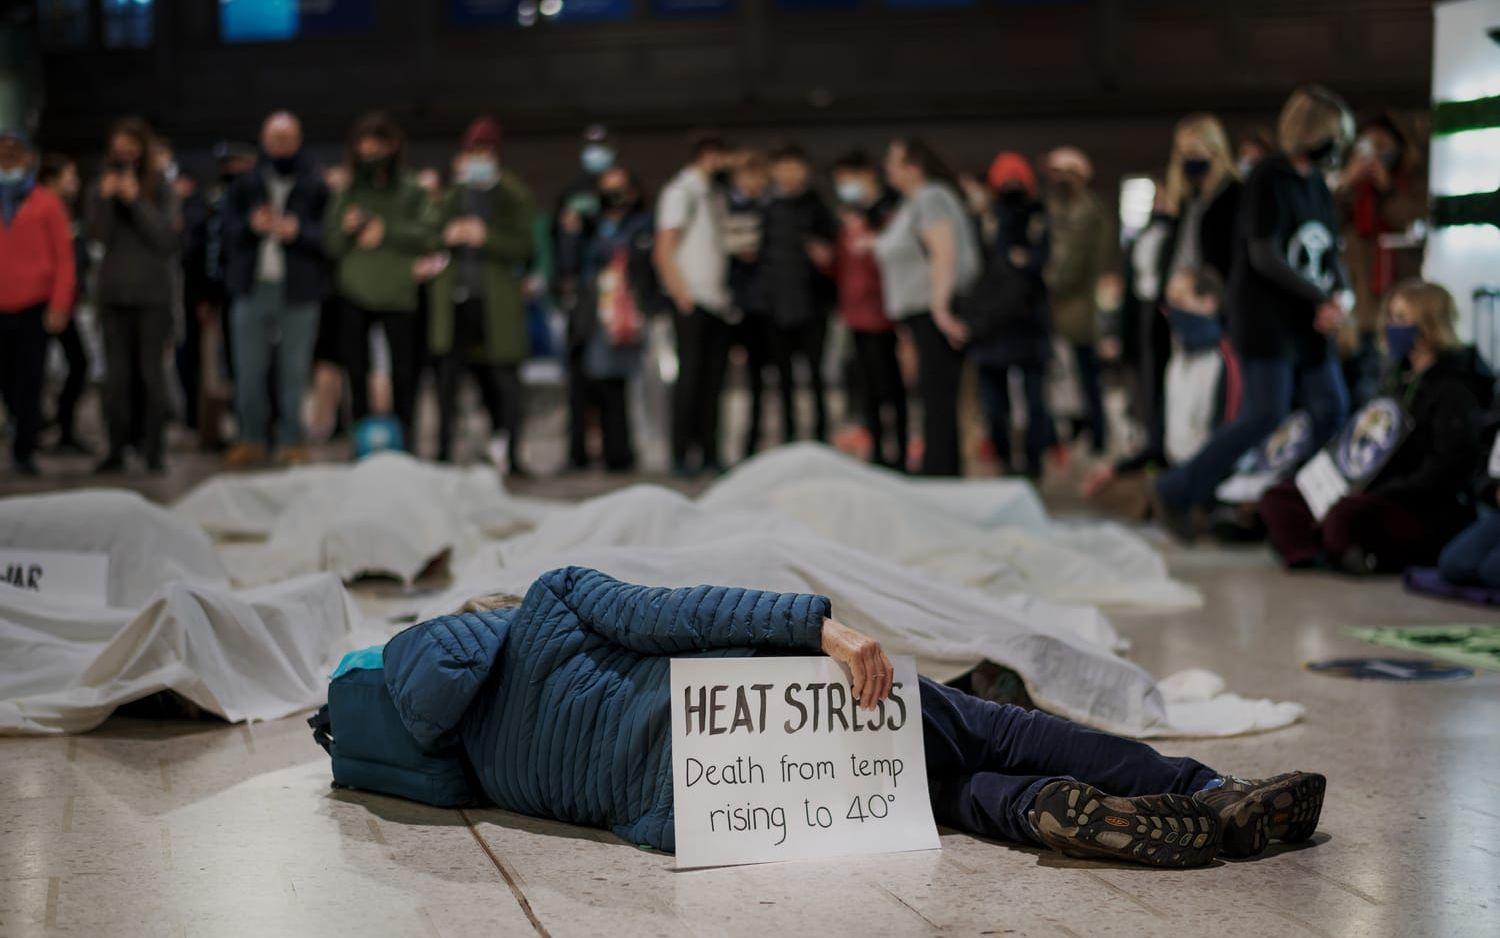 "Heat stress, death from temp rising to 40°" står det på en av skylltarna när Extinction rebellion har en aktion vid Glasgow Central Station.